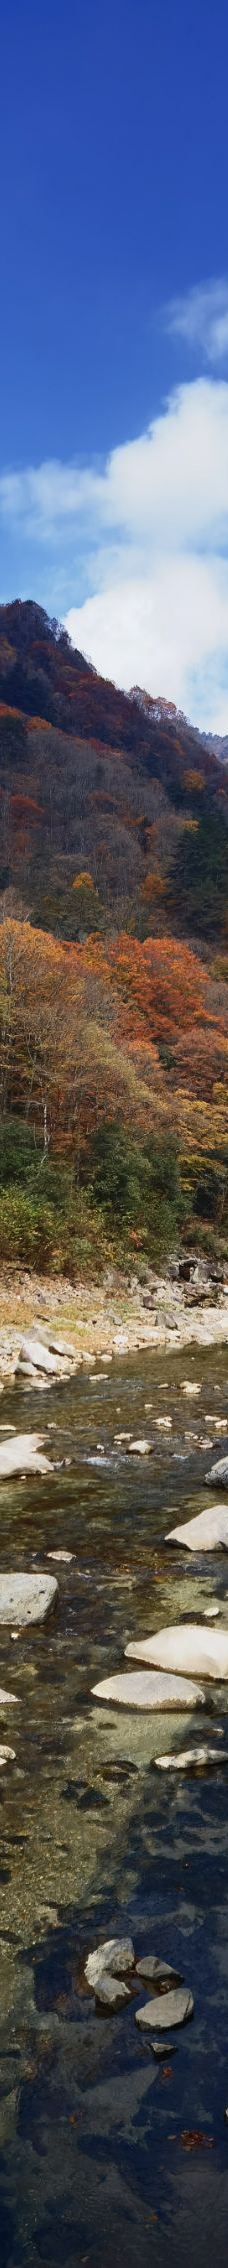 米仓山国家森林公园-南江-卡卡